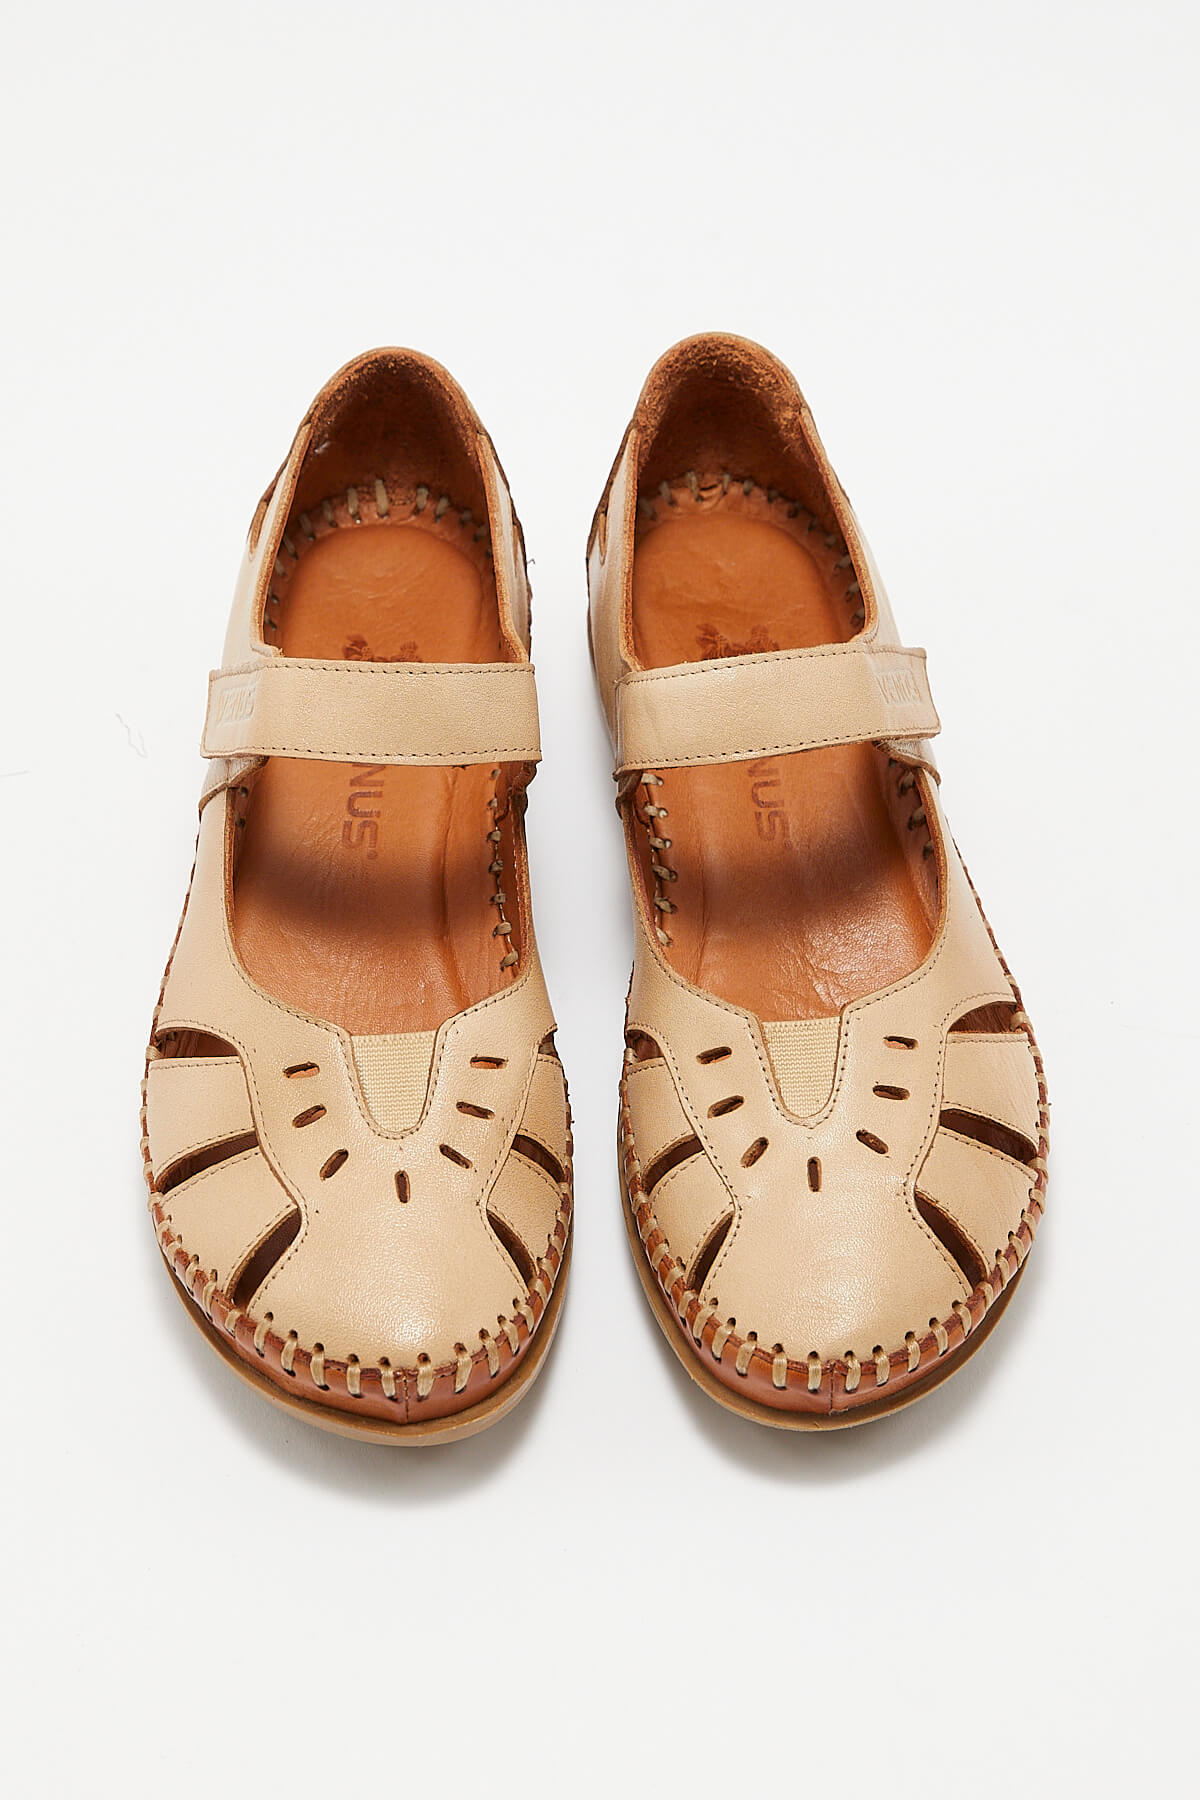 Kadın Comfort Deri Sandalet Bej 22793524 - Thumbnail